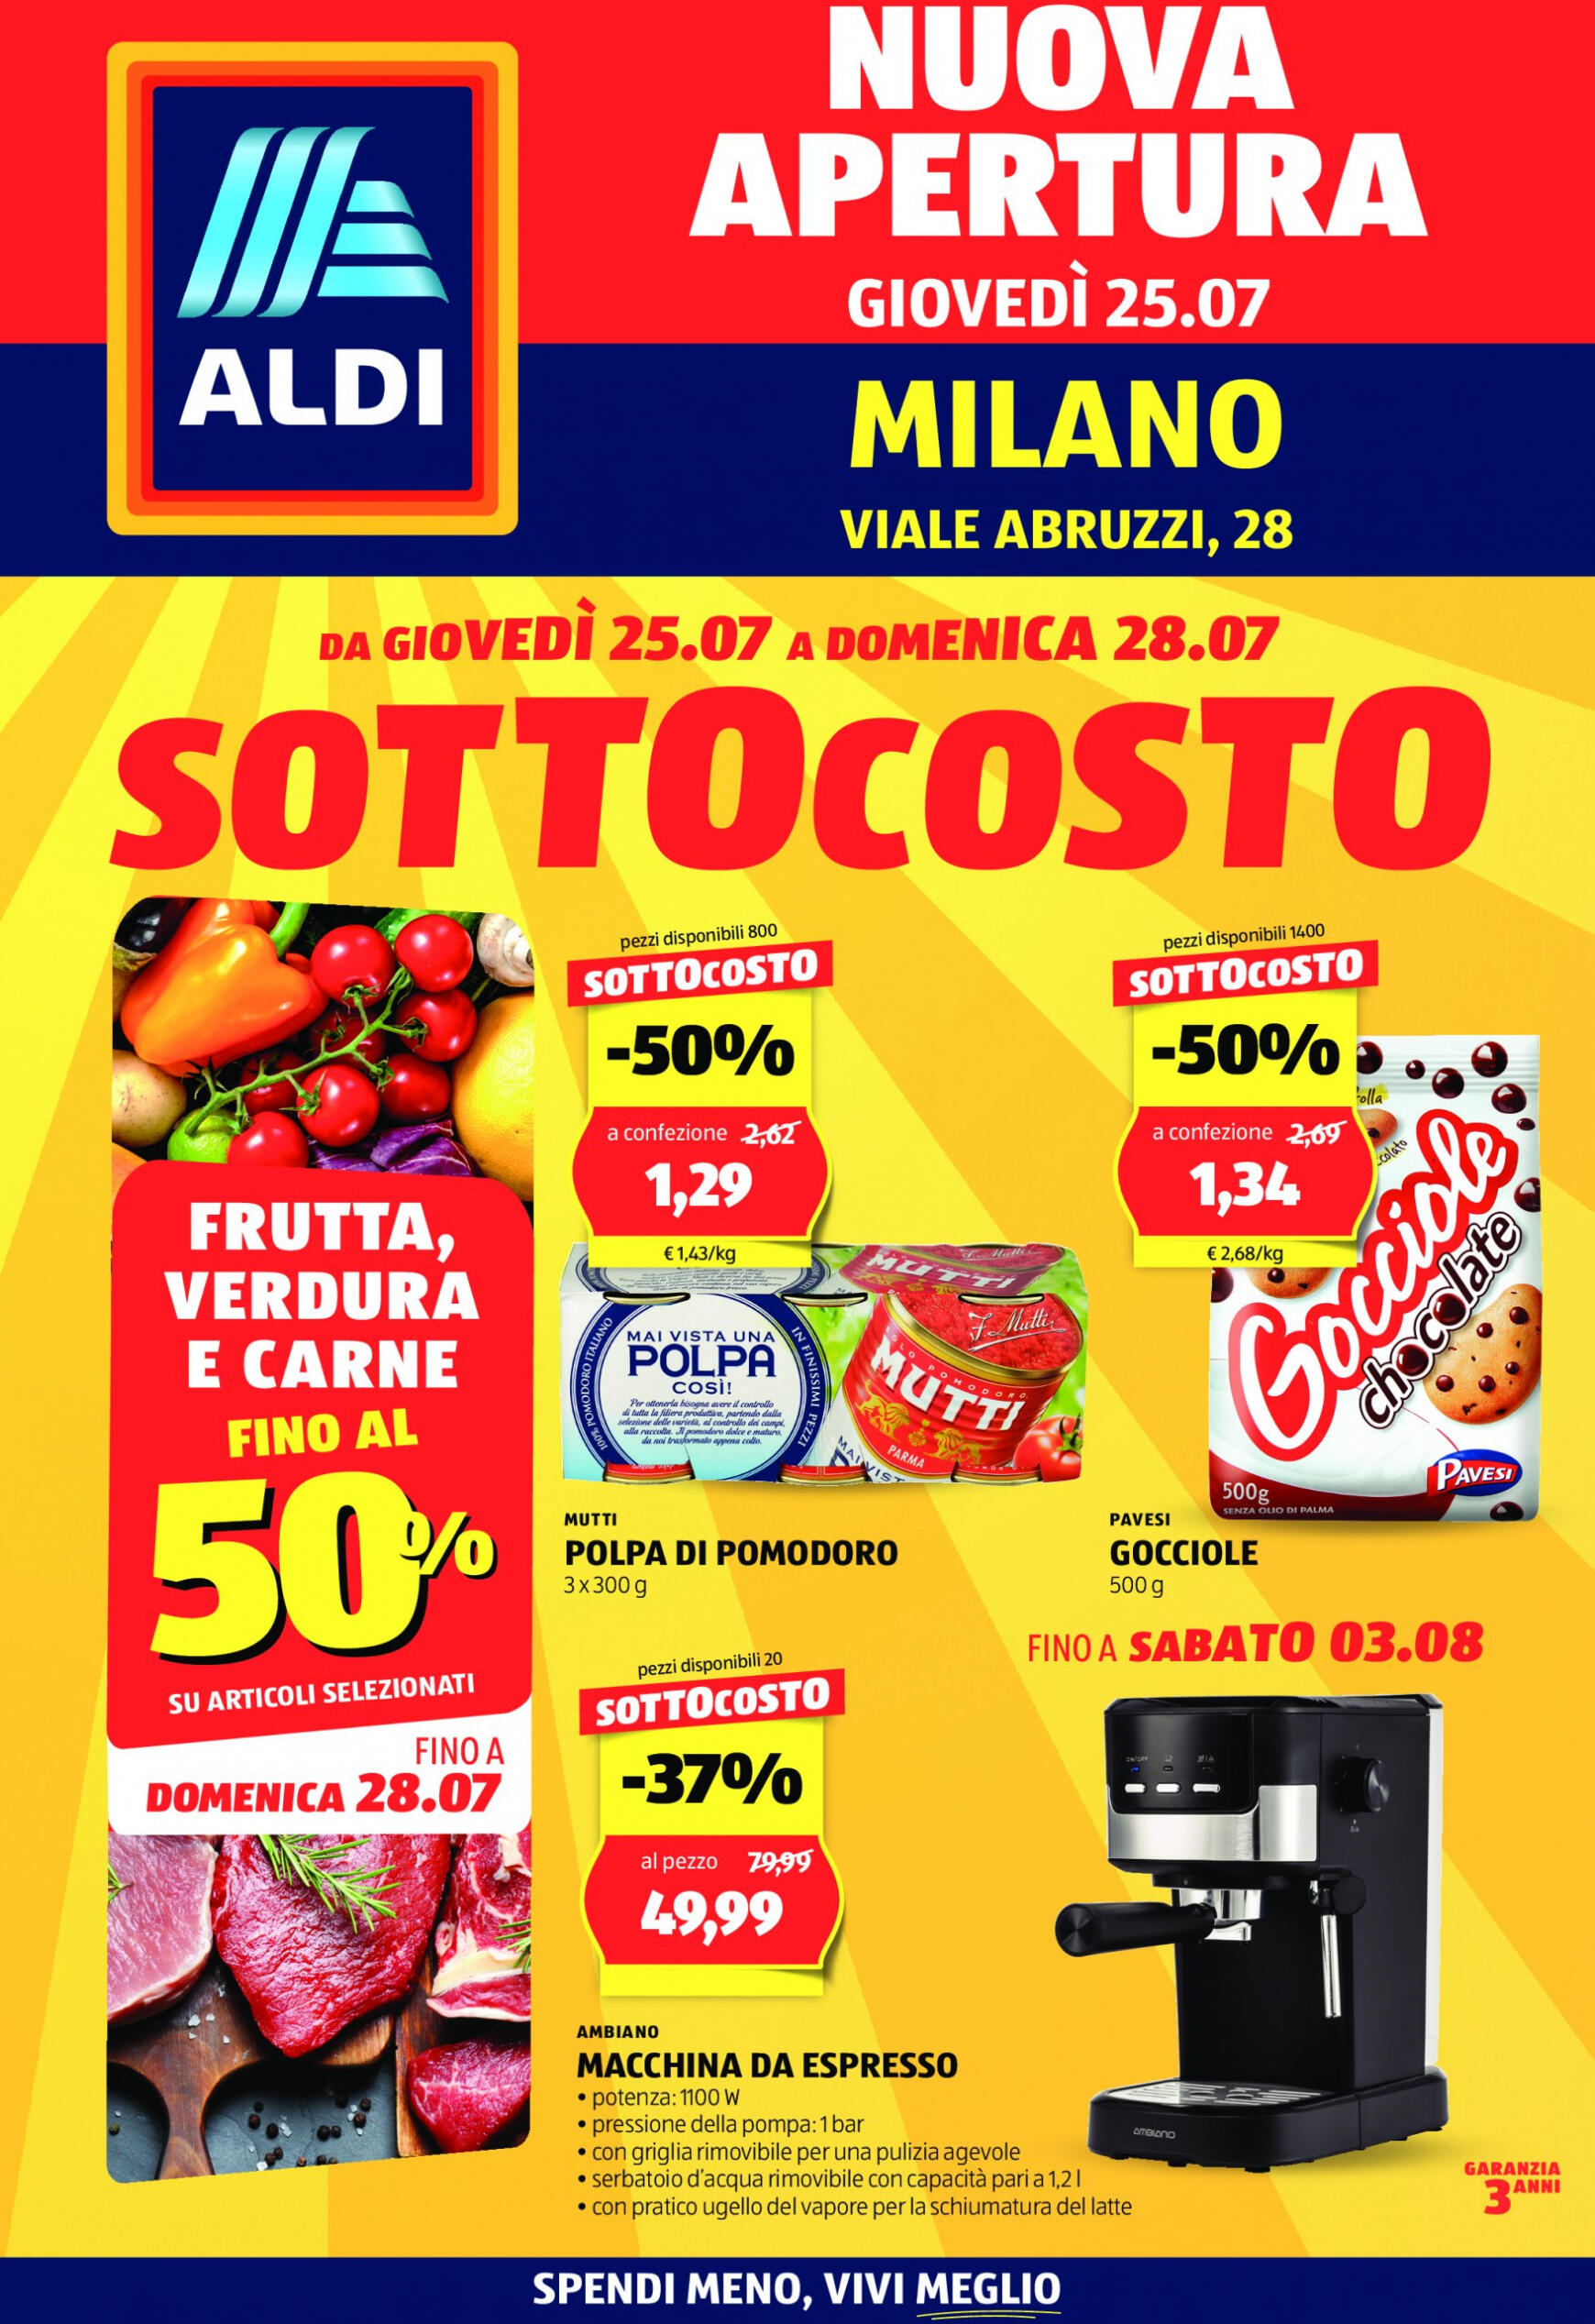 aldi - Nuovo volantino ALDI - Offerte nuova apertura Milano 25.07. - 28.07.